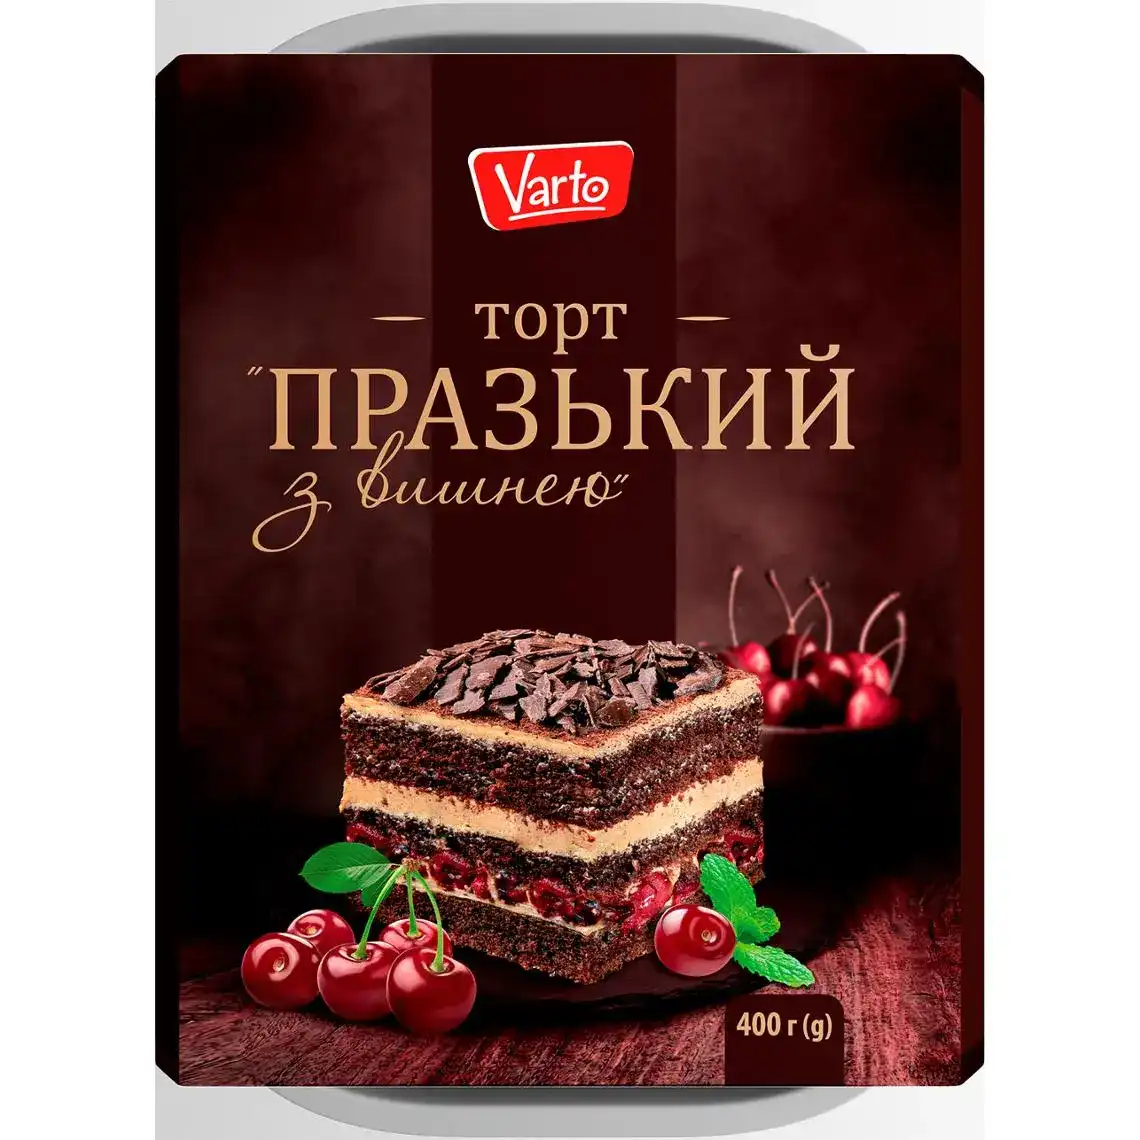 Торт Varto Празький з вишнею 400 г